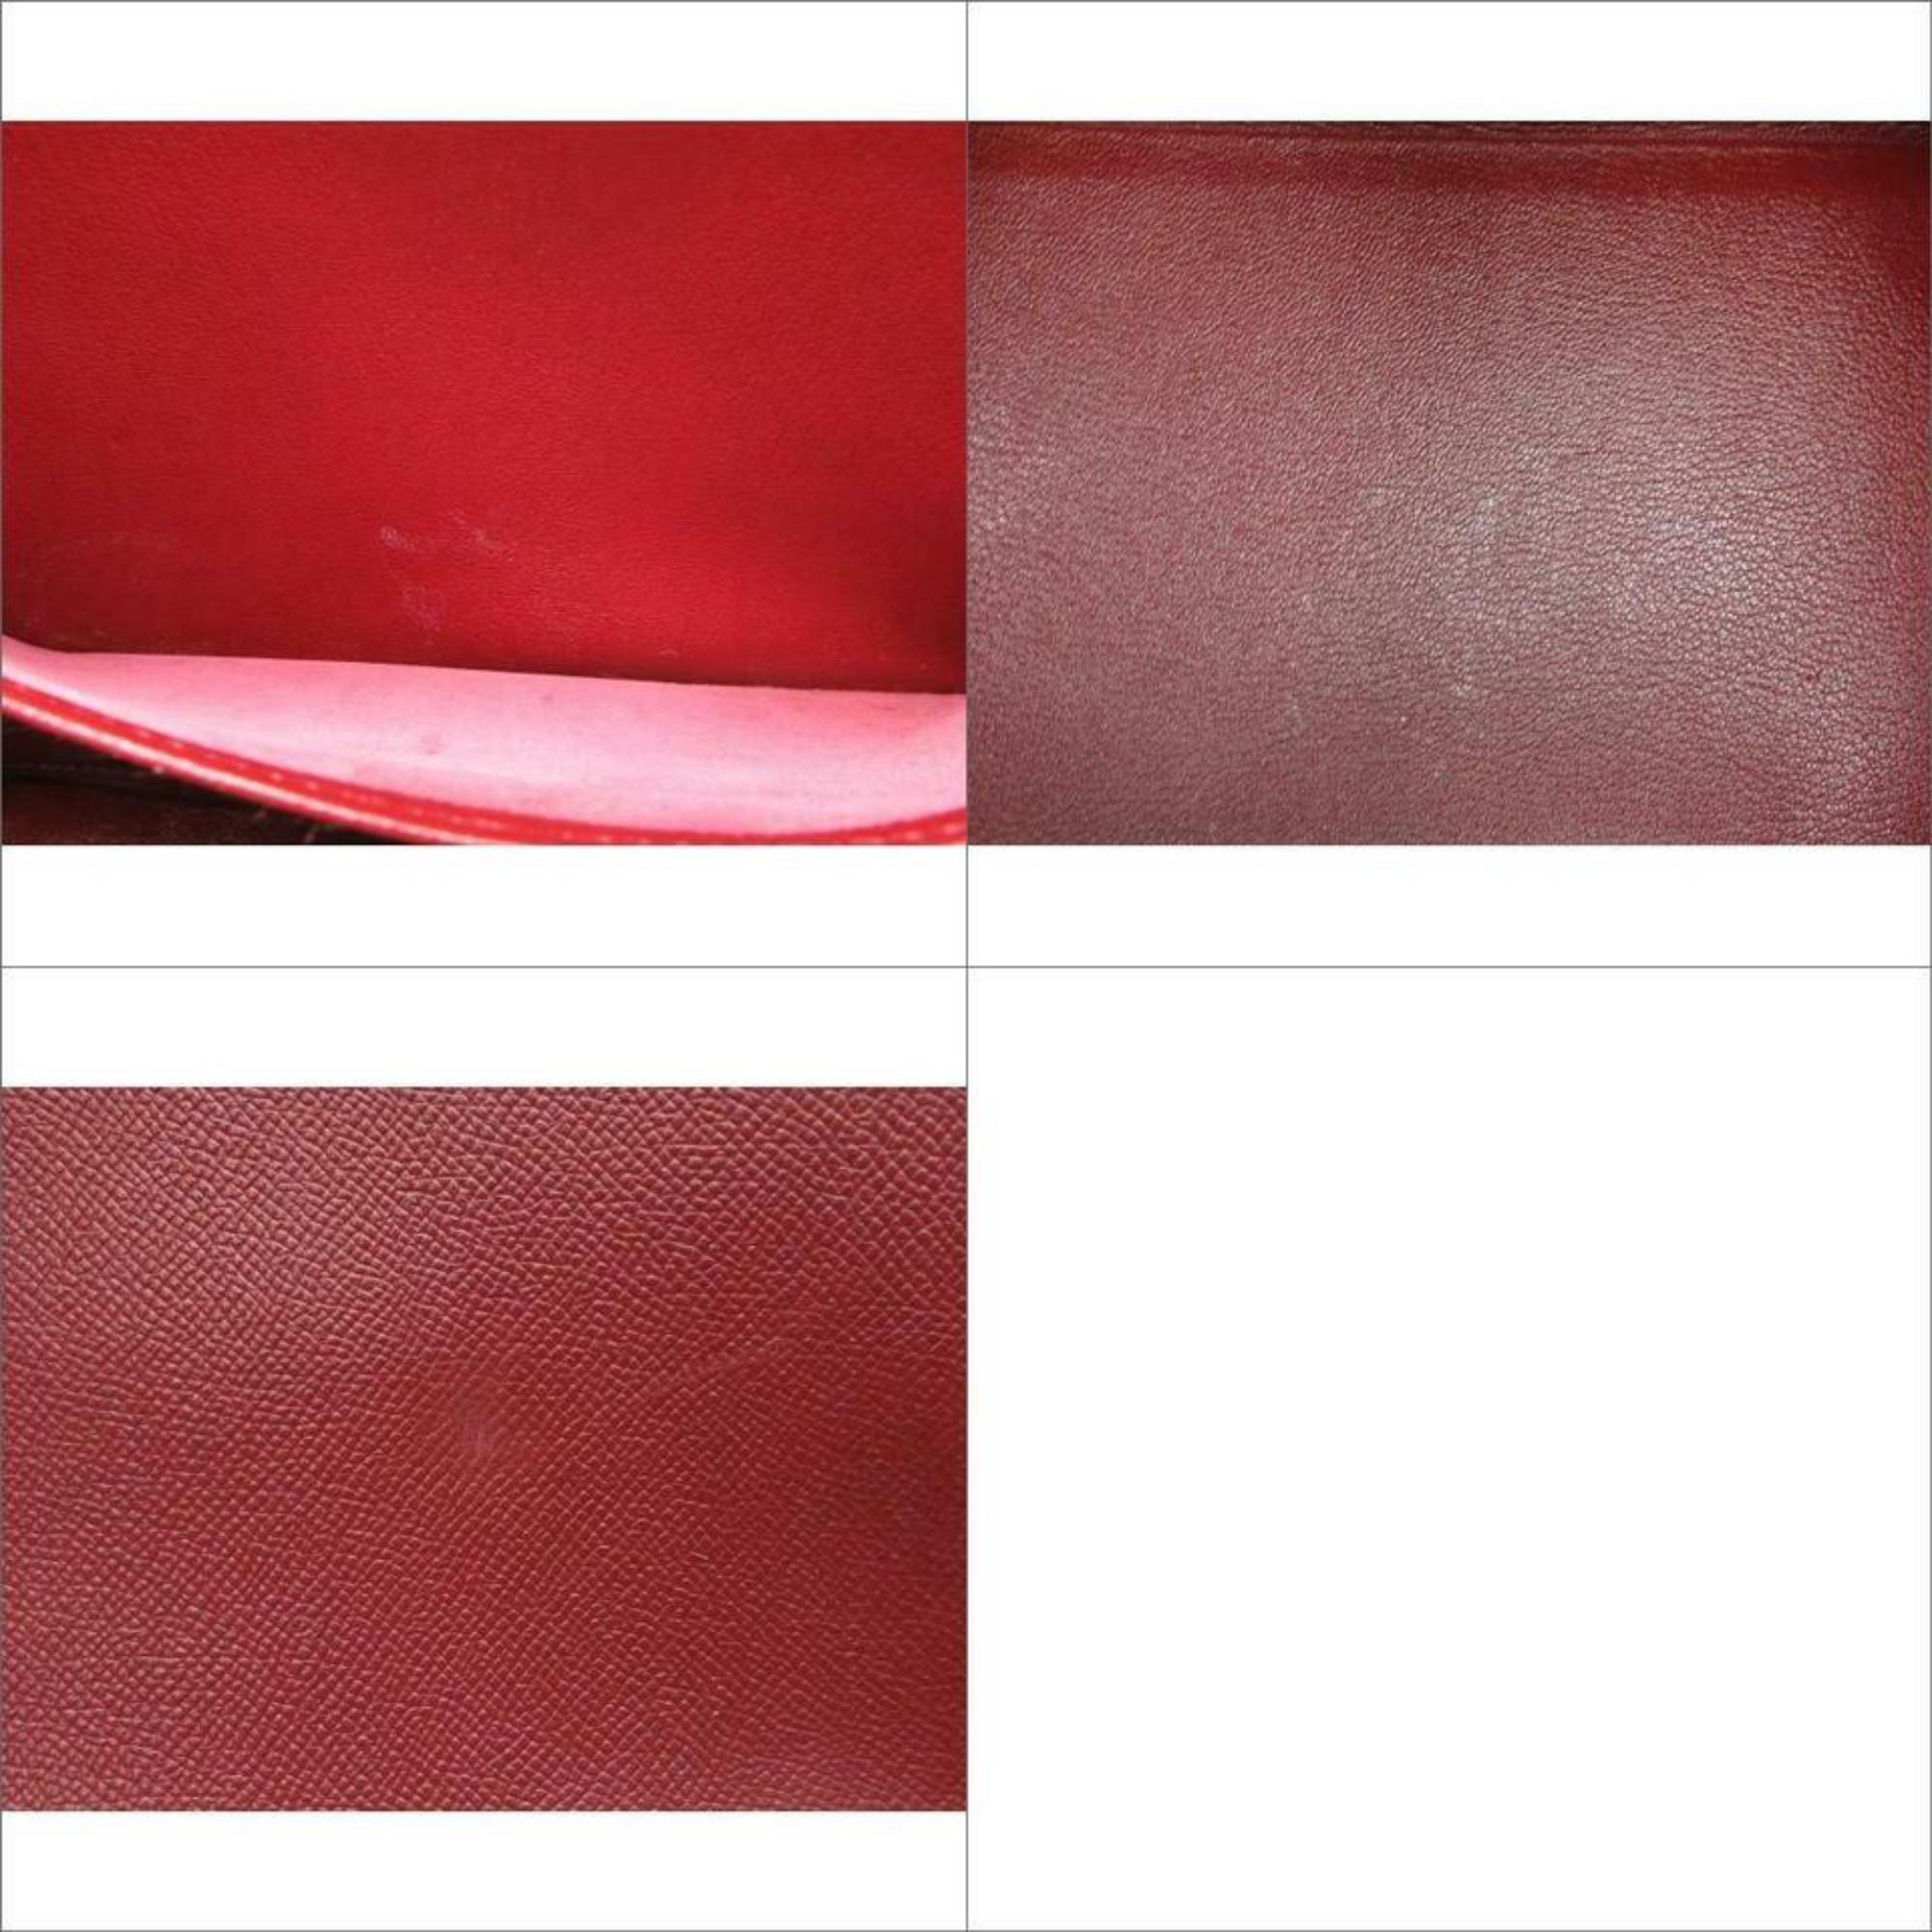 Women's Hermès Birkin Dark Rouge Courchevel Rouge 35 870369 Red Leather Satchel For Sale